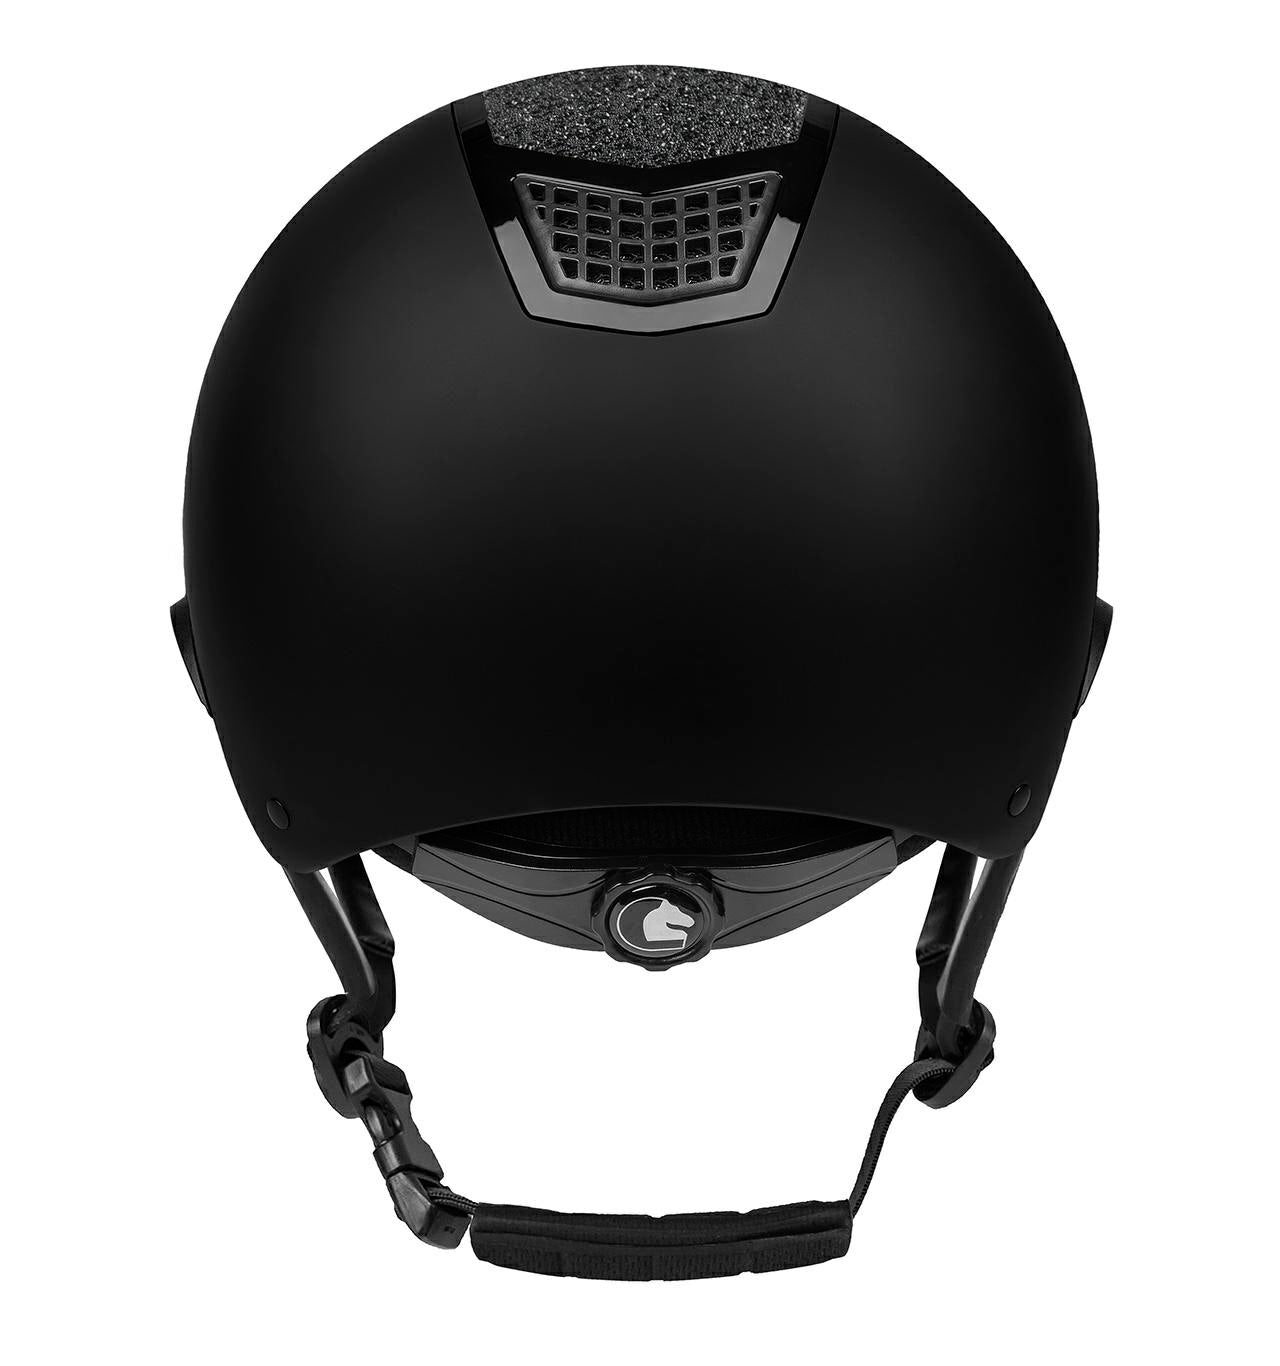 modern helmet for riding